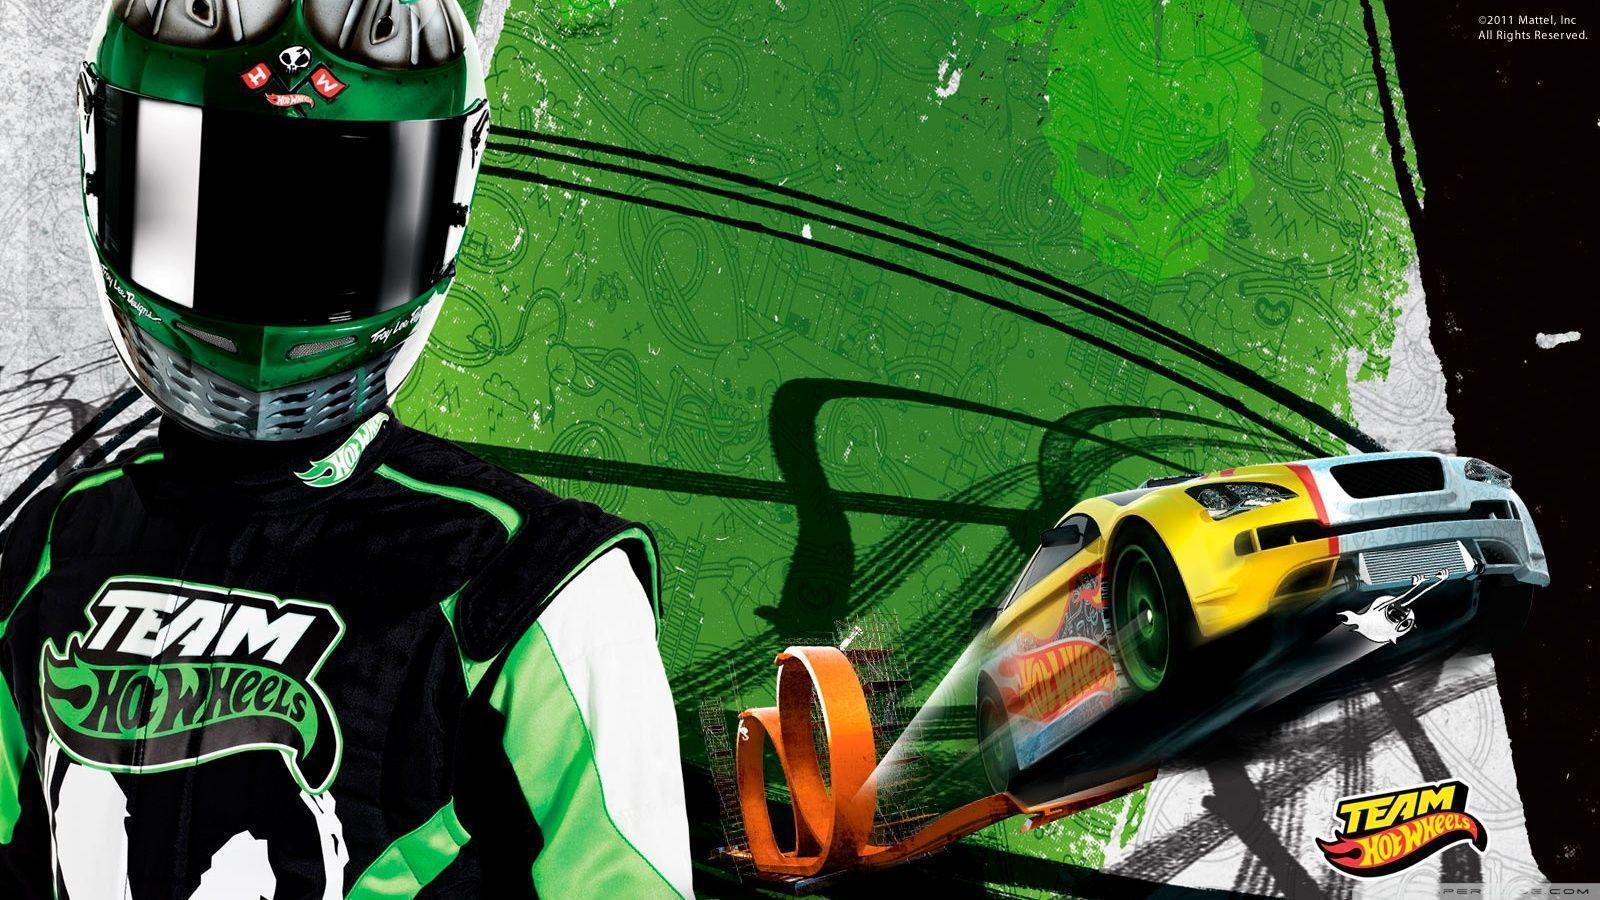 Hot Wheels. Green Team HD desktop wallpaper, Widescreen, High